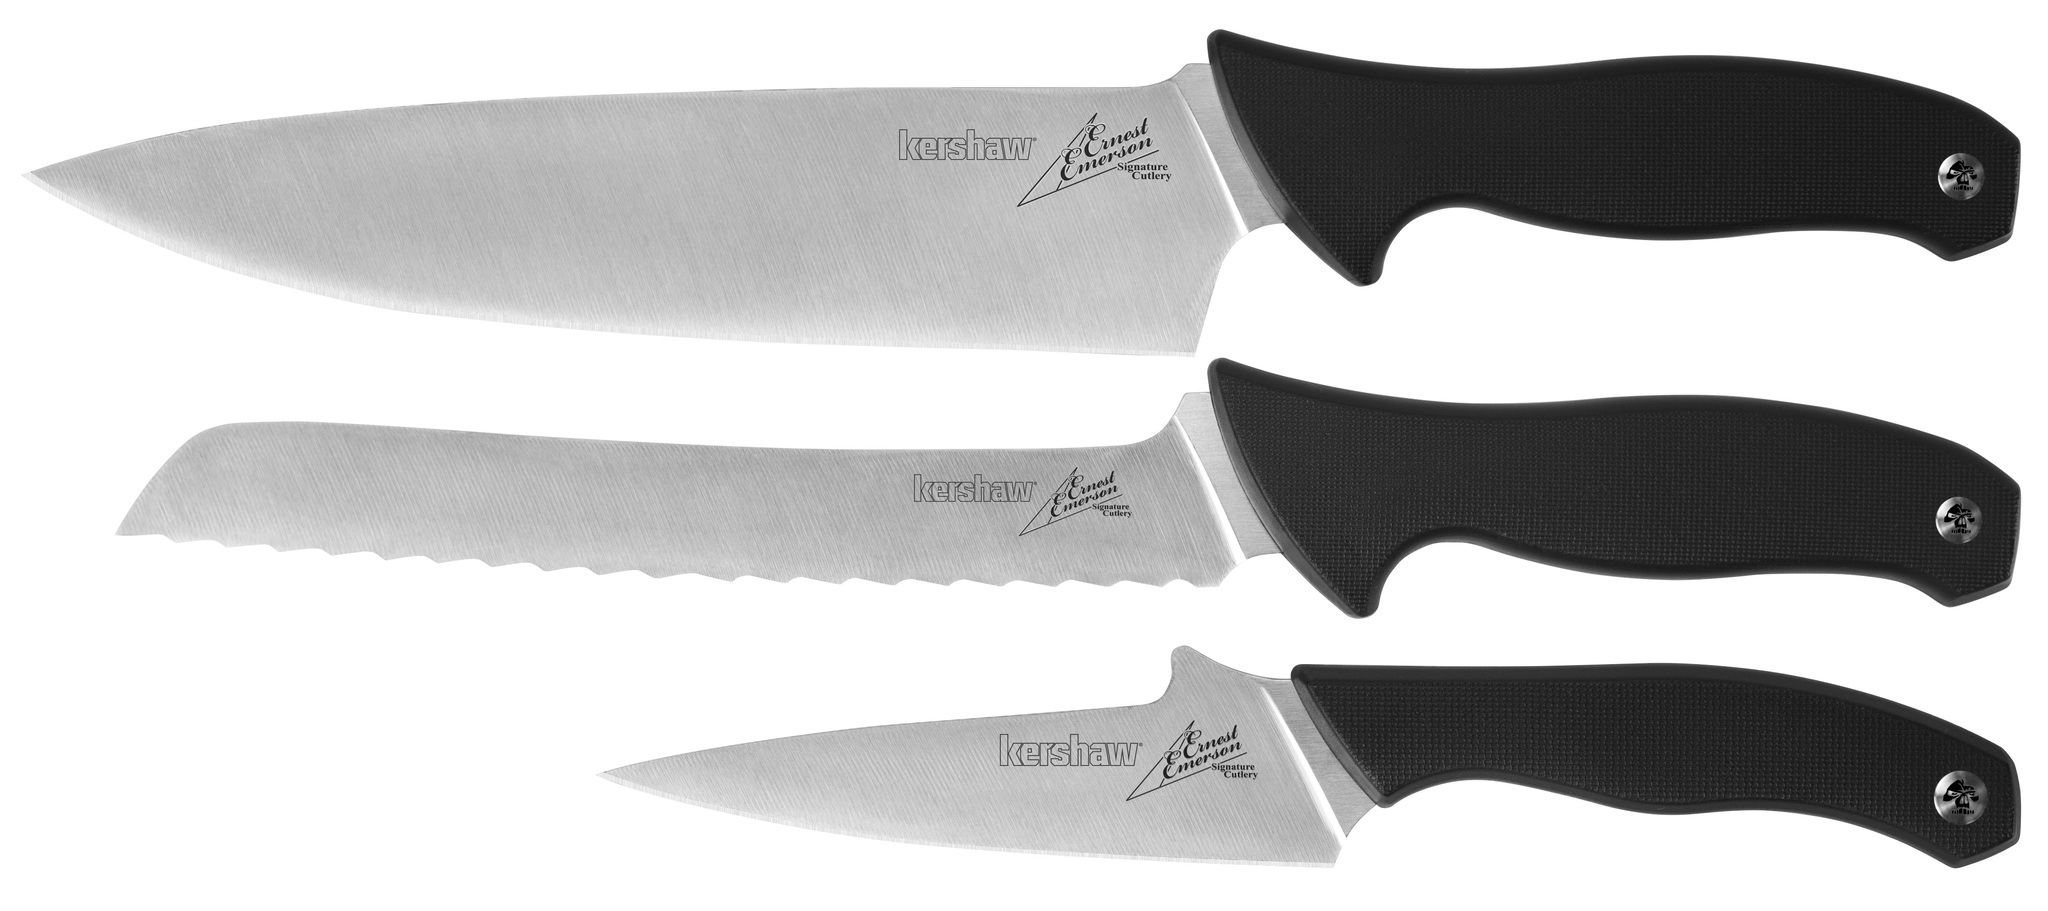 Набор из 3-х кухонных ножей EMERSON - KERSHAW 6100X из стали 1. 4116 (X50CrMoV 15), рукоять термопластик GRN